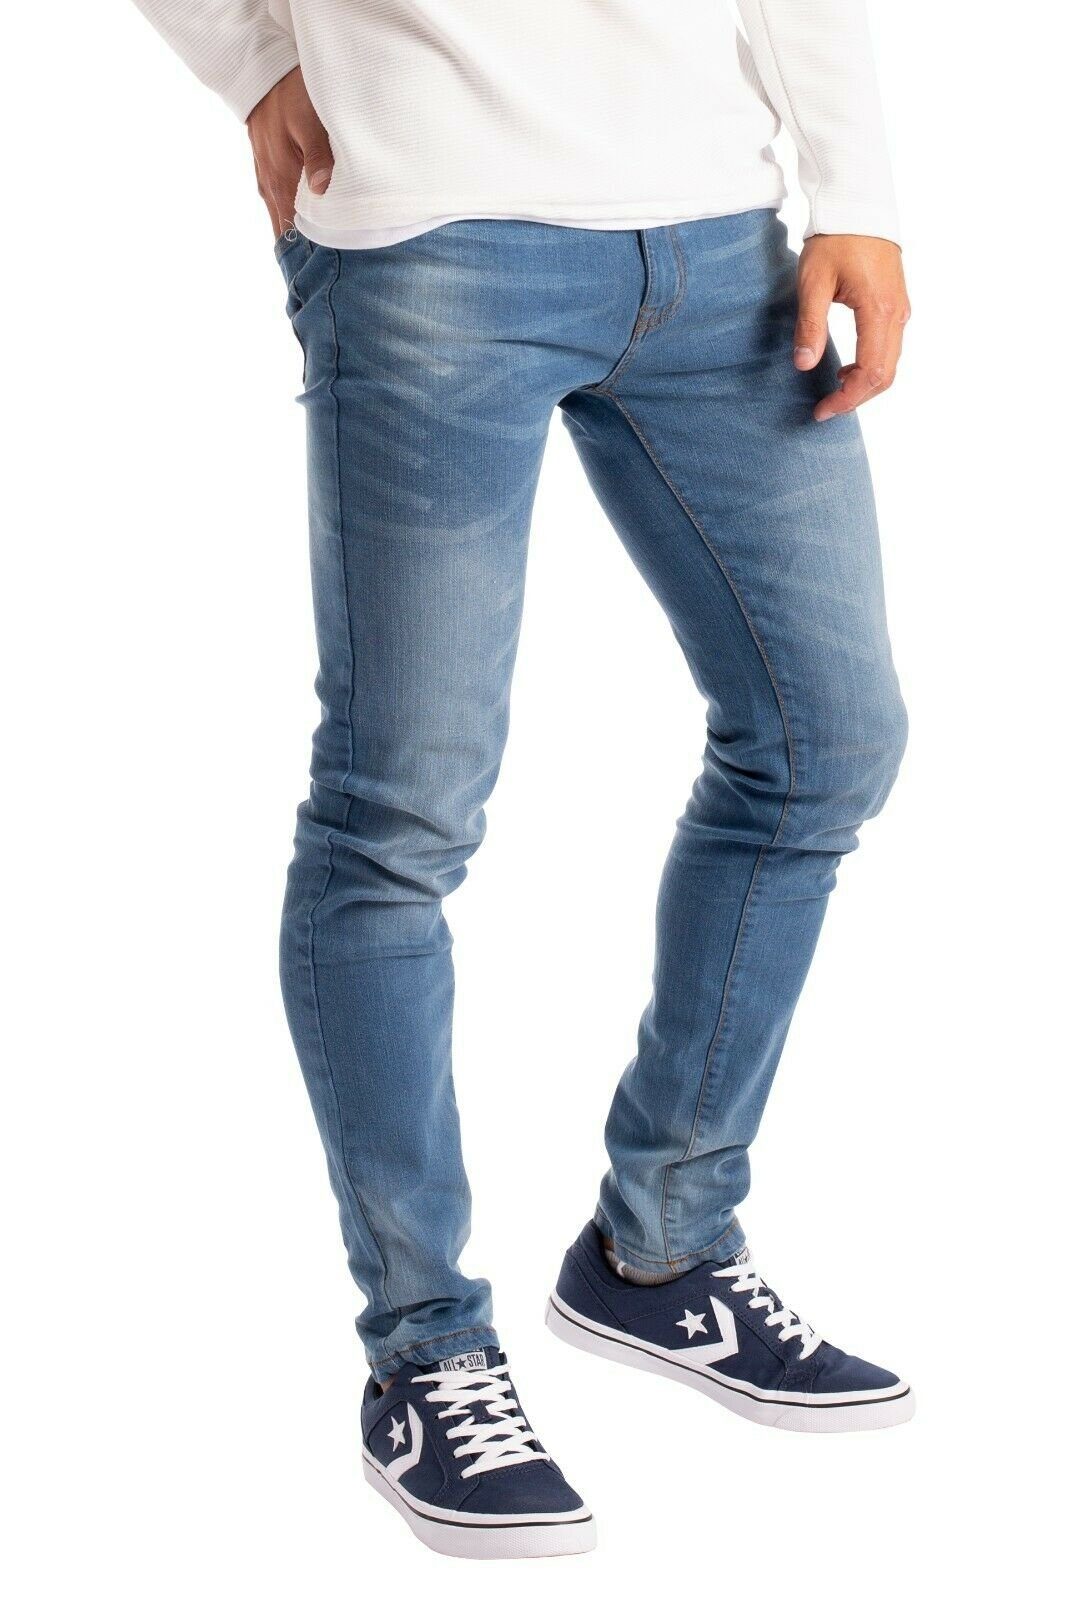 Slim-fit-Jeans Herren Slim Fit Jeanshose Stretch Designer Hose Super Flex Denim Pants Alle Größen von 28-40, erhältlich 30, 32 & Beinlänge, 98% 2% Stretch, 2 Seitentaschen, 2 Gesäßtaschen und vordere Münztasche